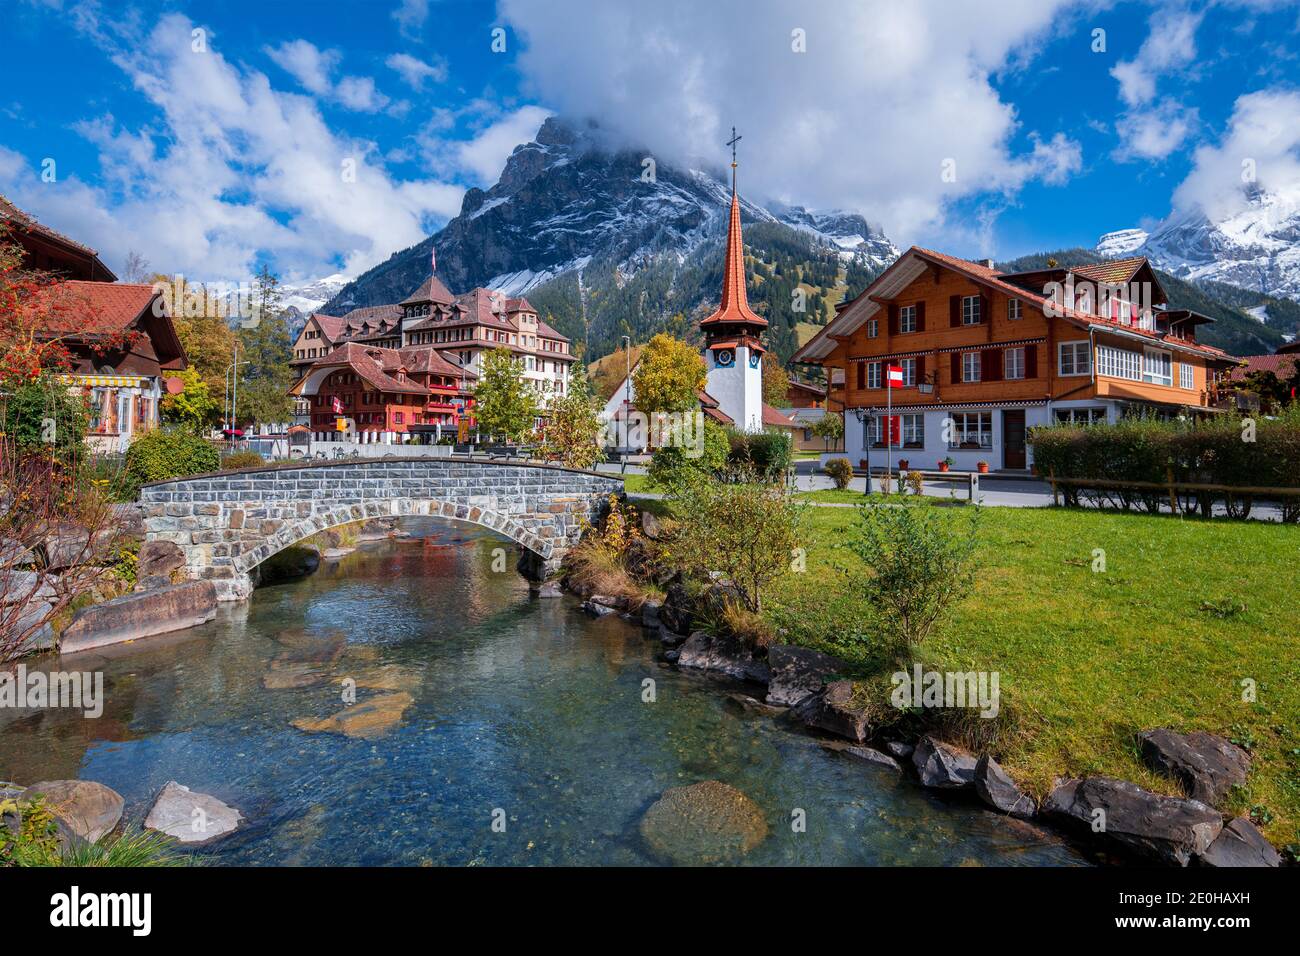 Village Kandersteg (Switzerland) and the mountain Dundenhorn Stock Photo